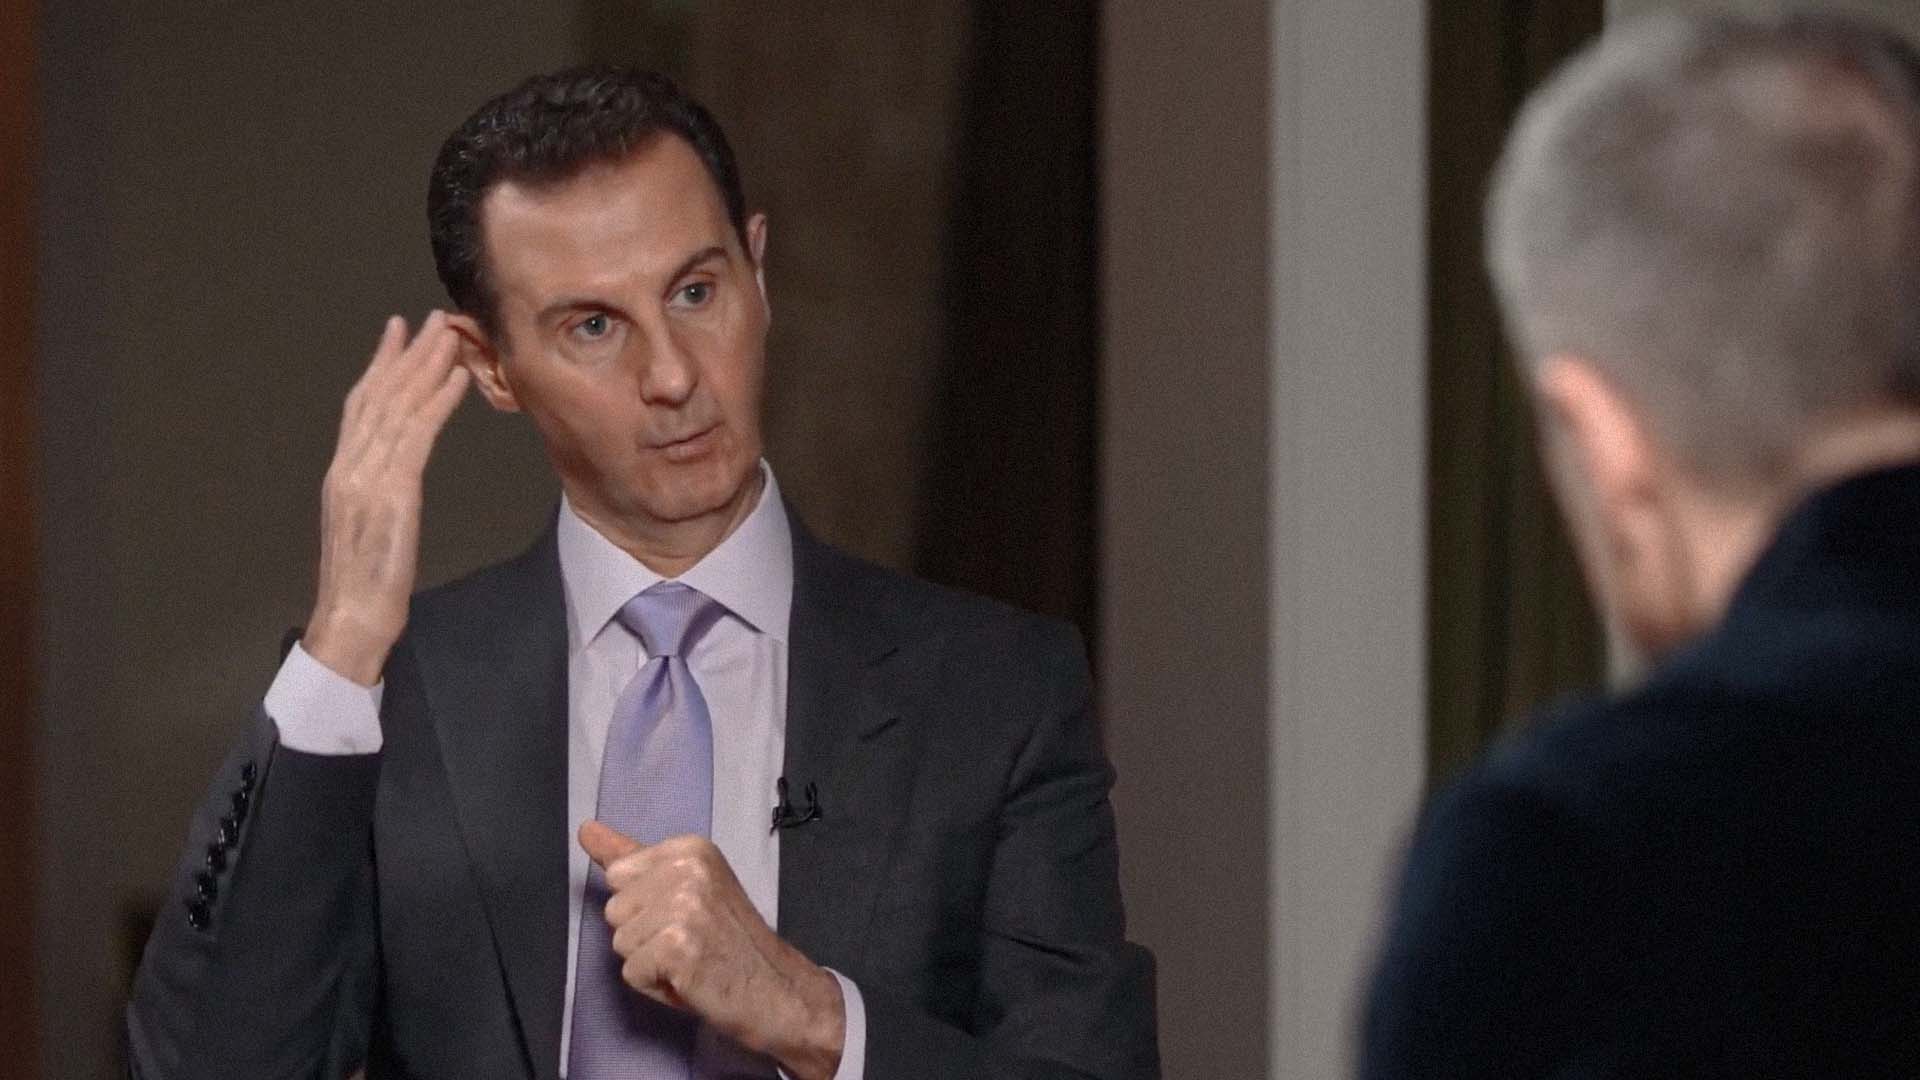 صورة دوره الفاعل في النظام العالمي الجديد، وثلاثة أساطير أخرى يؤمن بها بشار الأسد